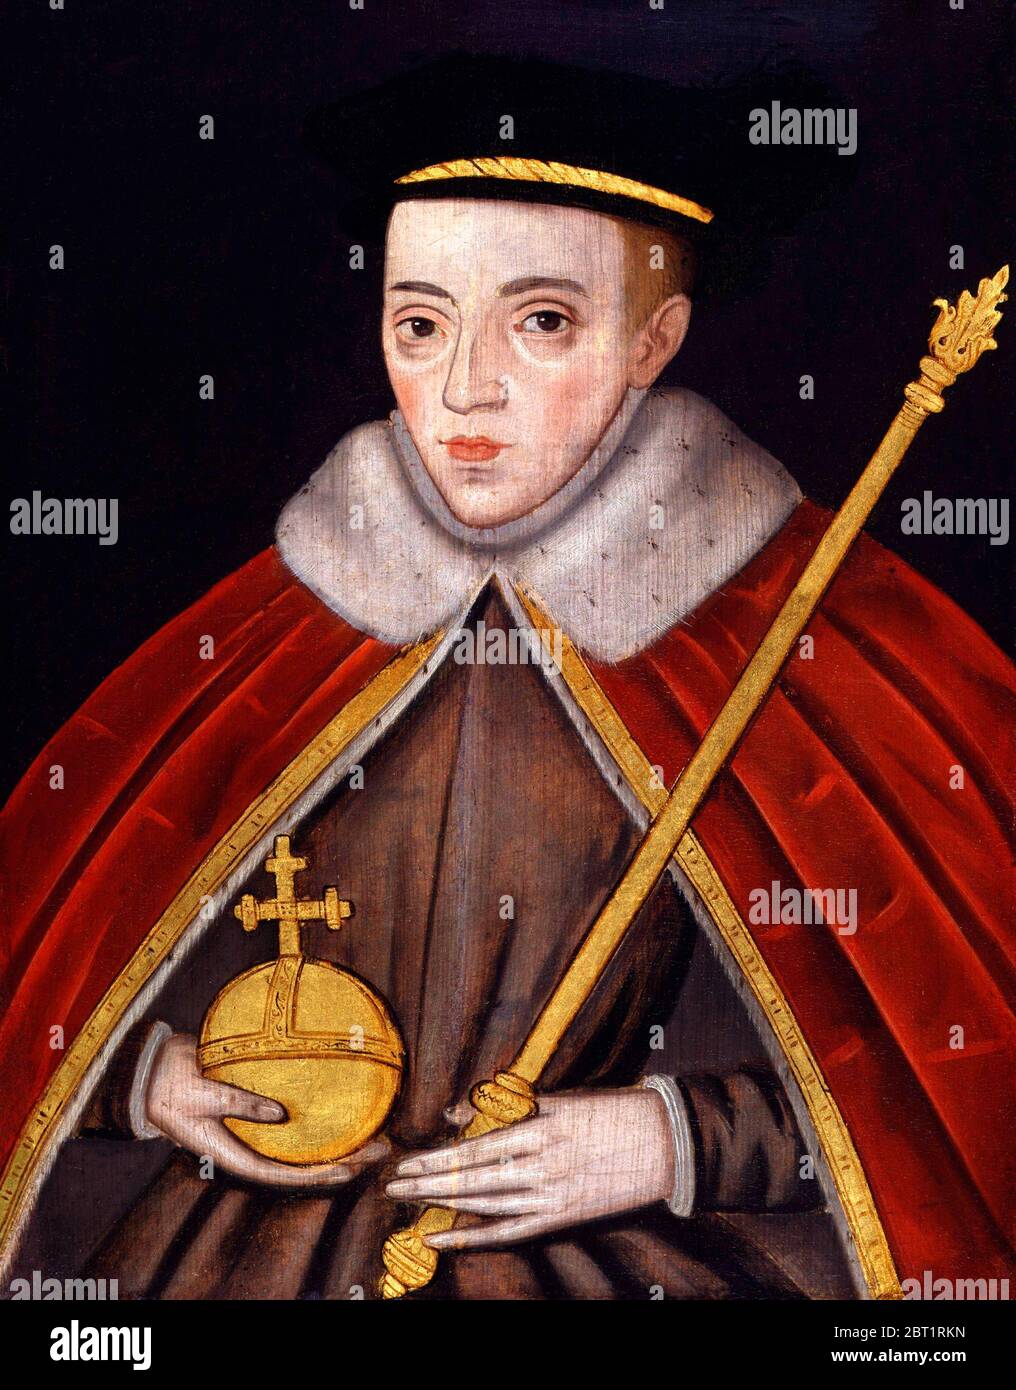 Roi Edward V d'Angleterre, portrait, huile sur panneau, début 16thC par artiste inconnu Banque D'Images